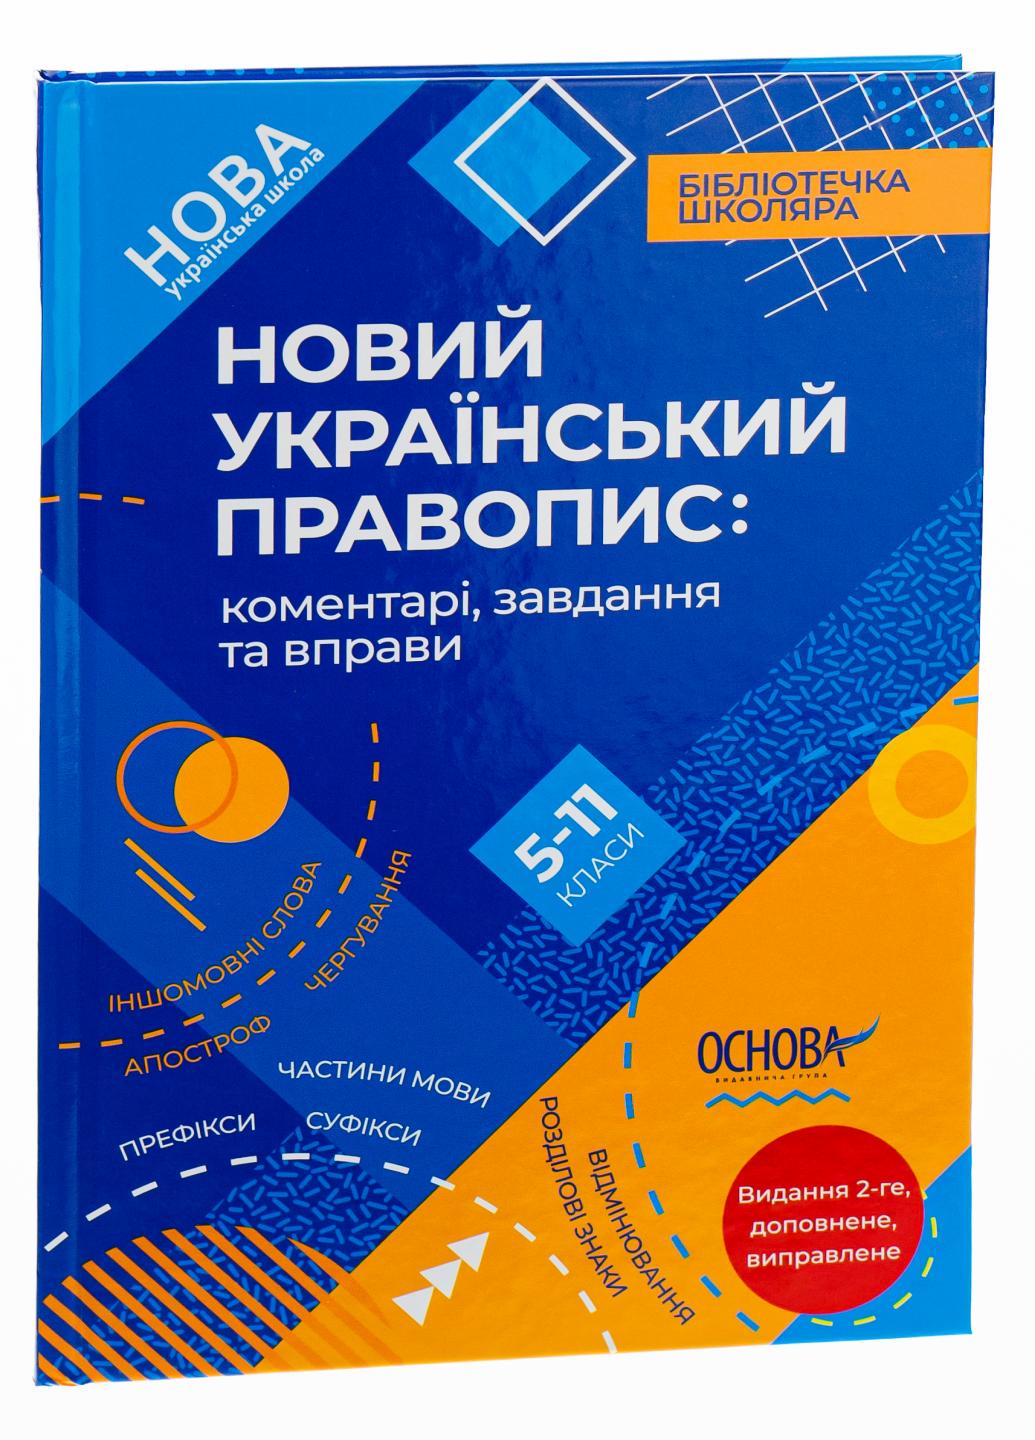 Новий Український правопис: коментарі, завдання та вправи. 5-11-й класи. КДН026 (9786170041289)